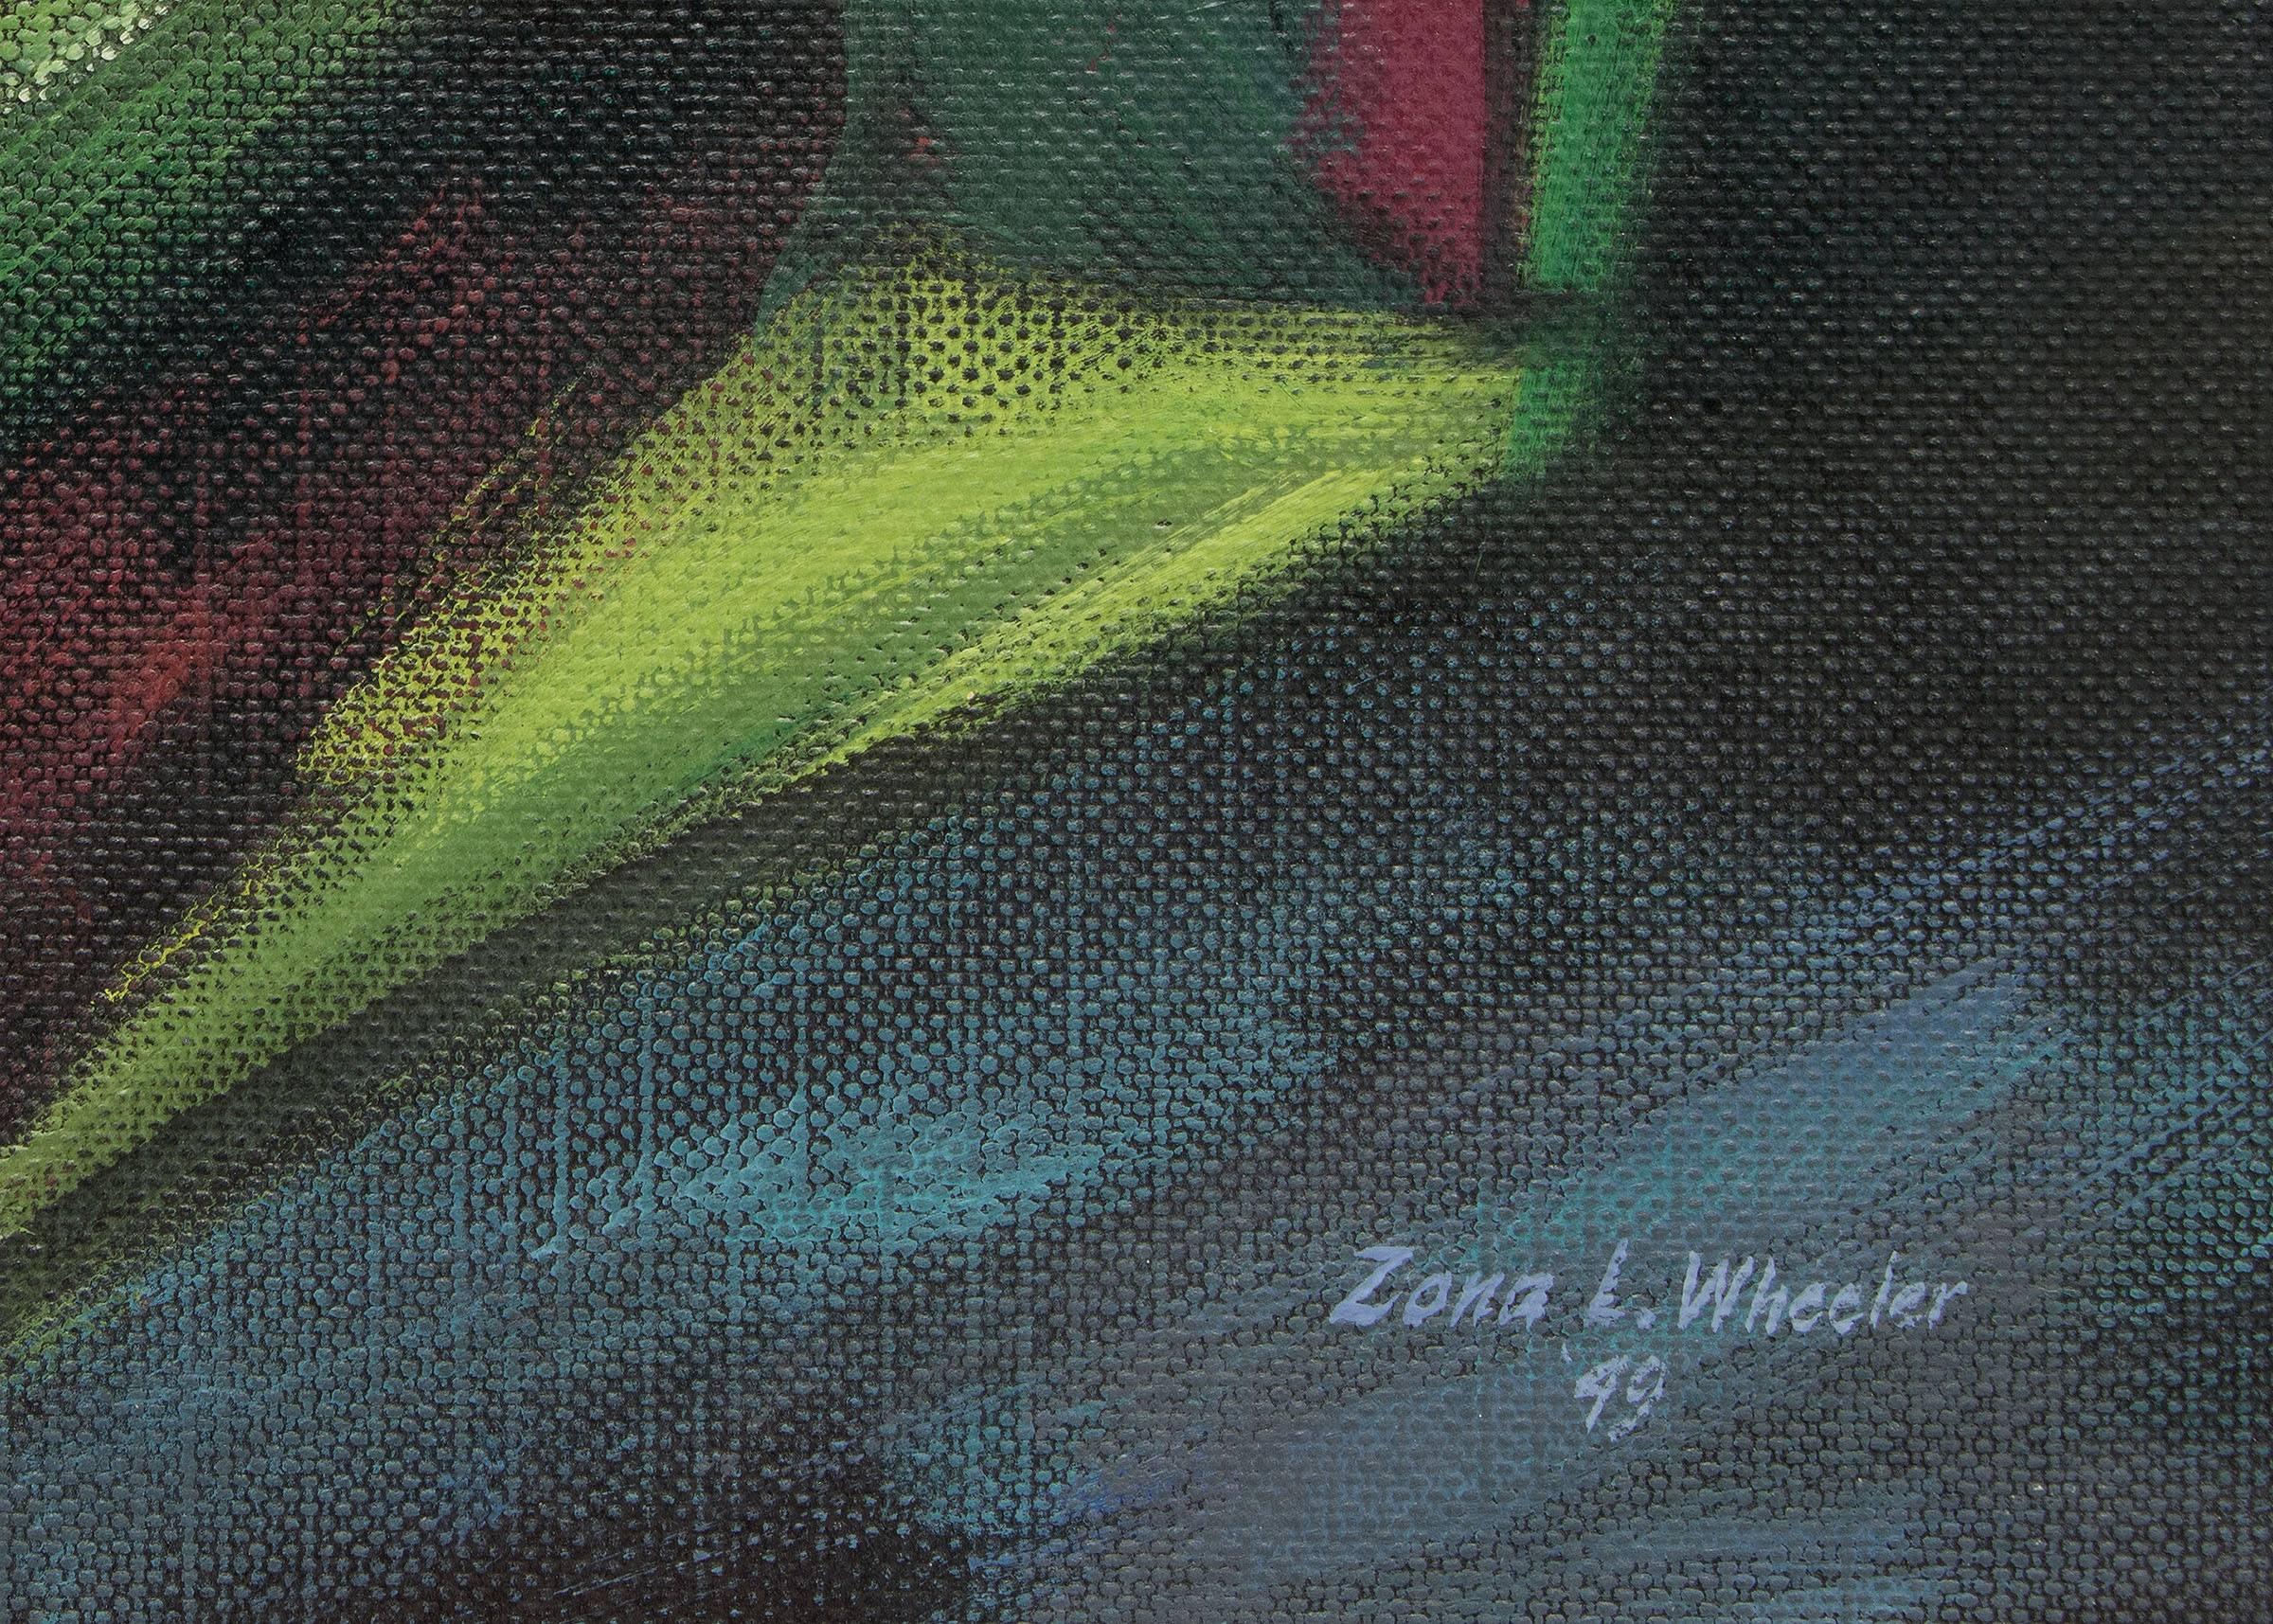 Landscap abstrait des montagnes du Colorado, peinture moderniste vert rose bleu - Abstrait Painting par Zona Wheeler